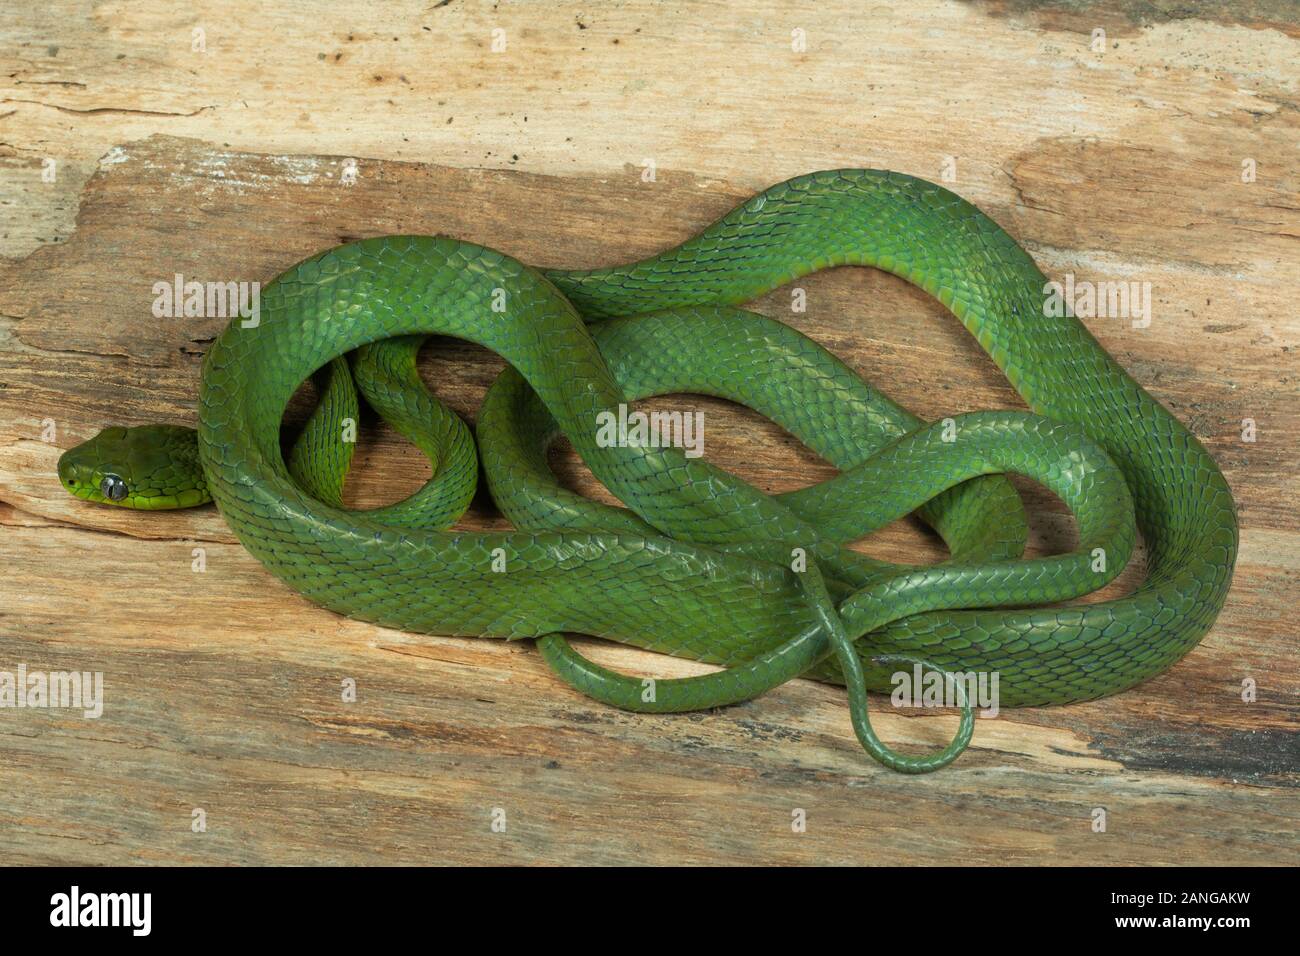 Cyanea Colubrid Boiga, especies de serpientes que habitan en el sur de Asia, China y el sudeste de Asia Foto de stock